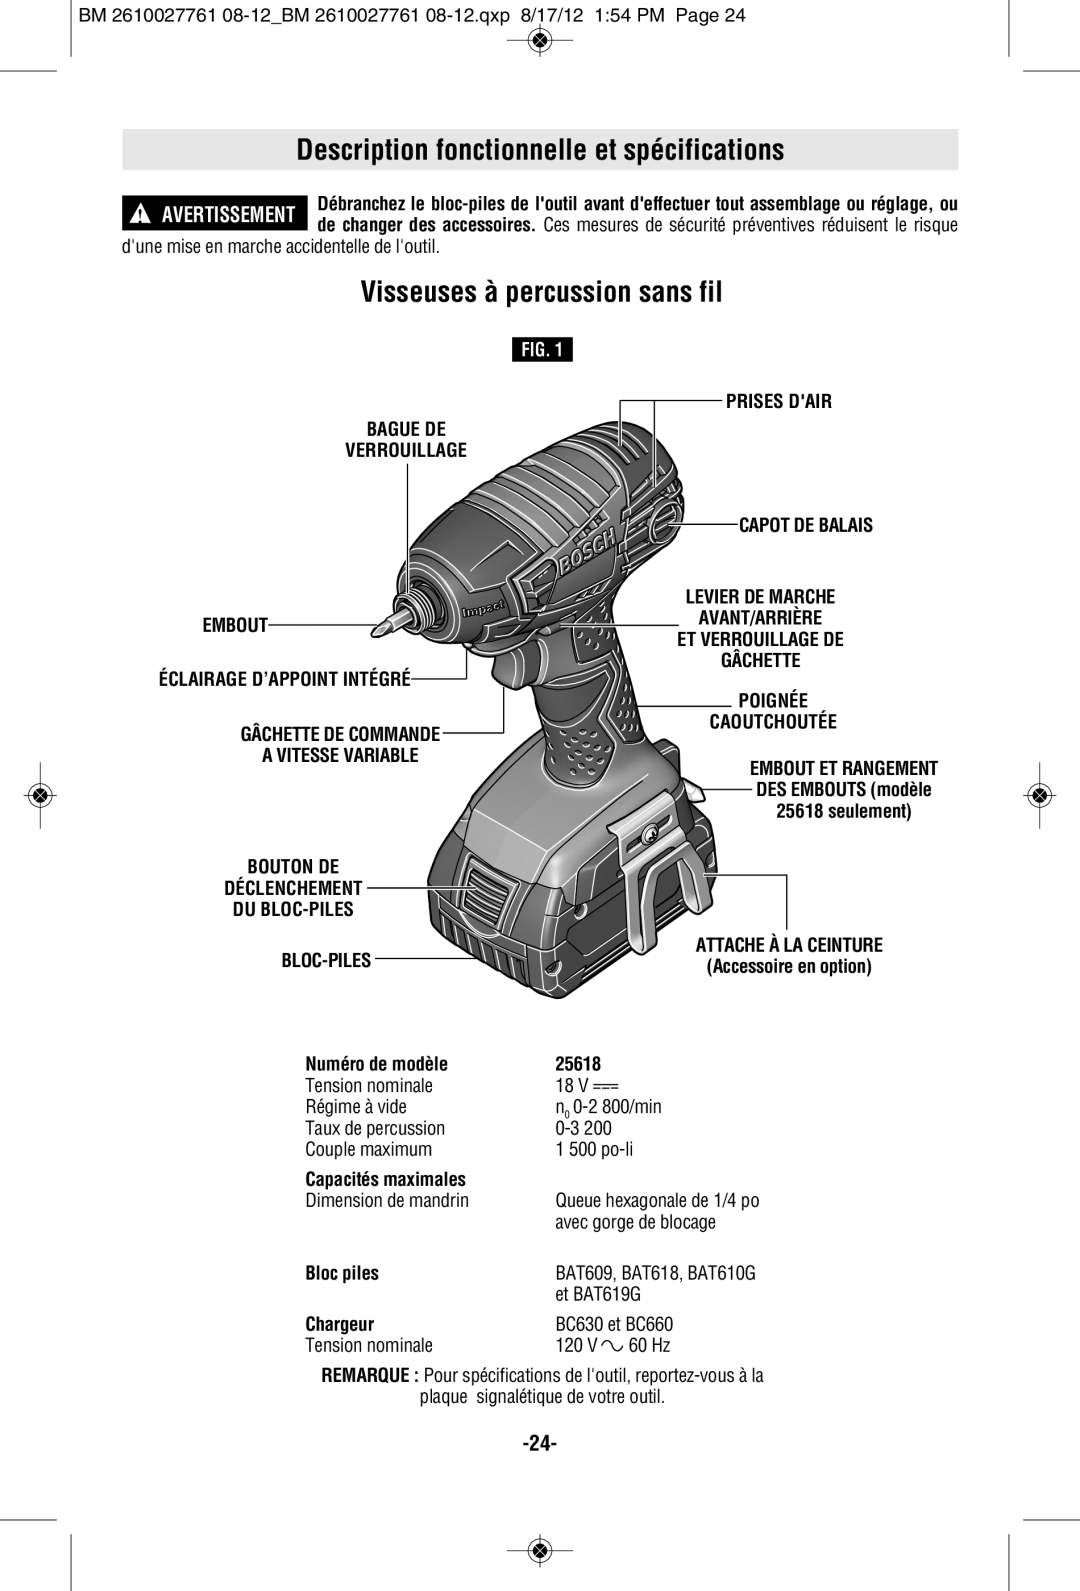 Bosch Power Tools 25618BL manual Description fonctionnelle et spécifications, Visseuses à percussion sans fil, Prises Dair 